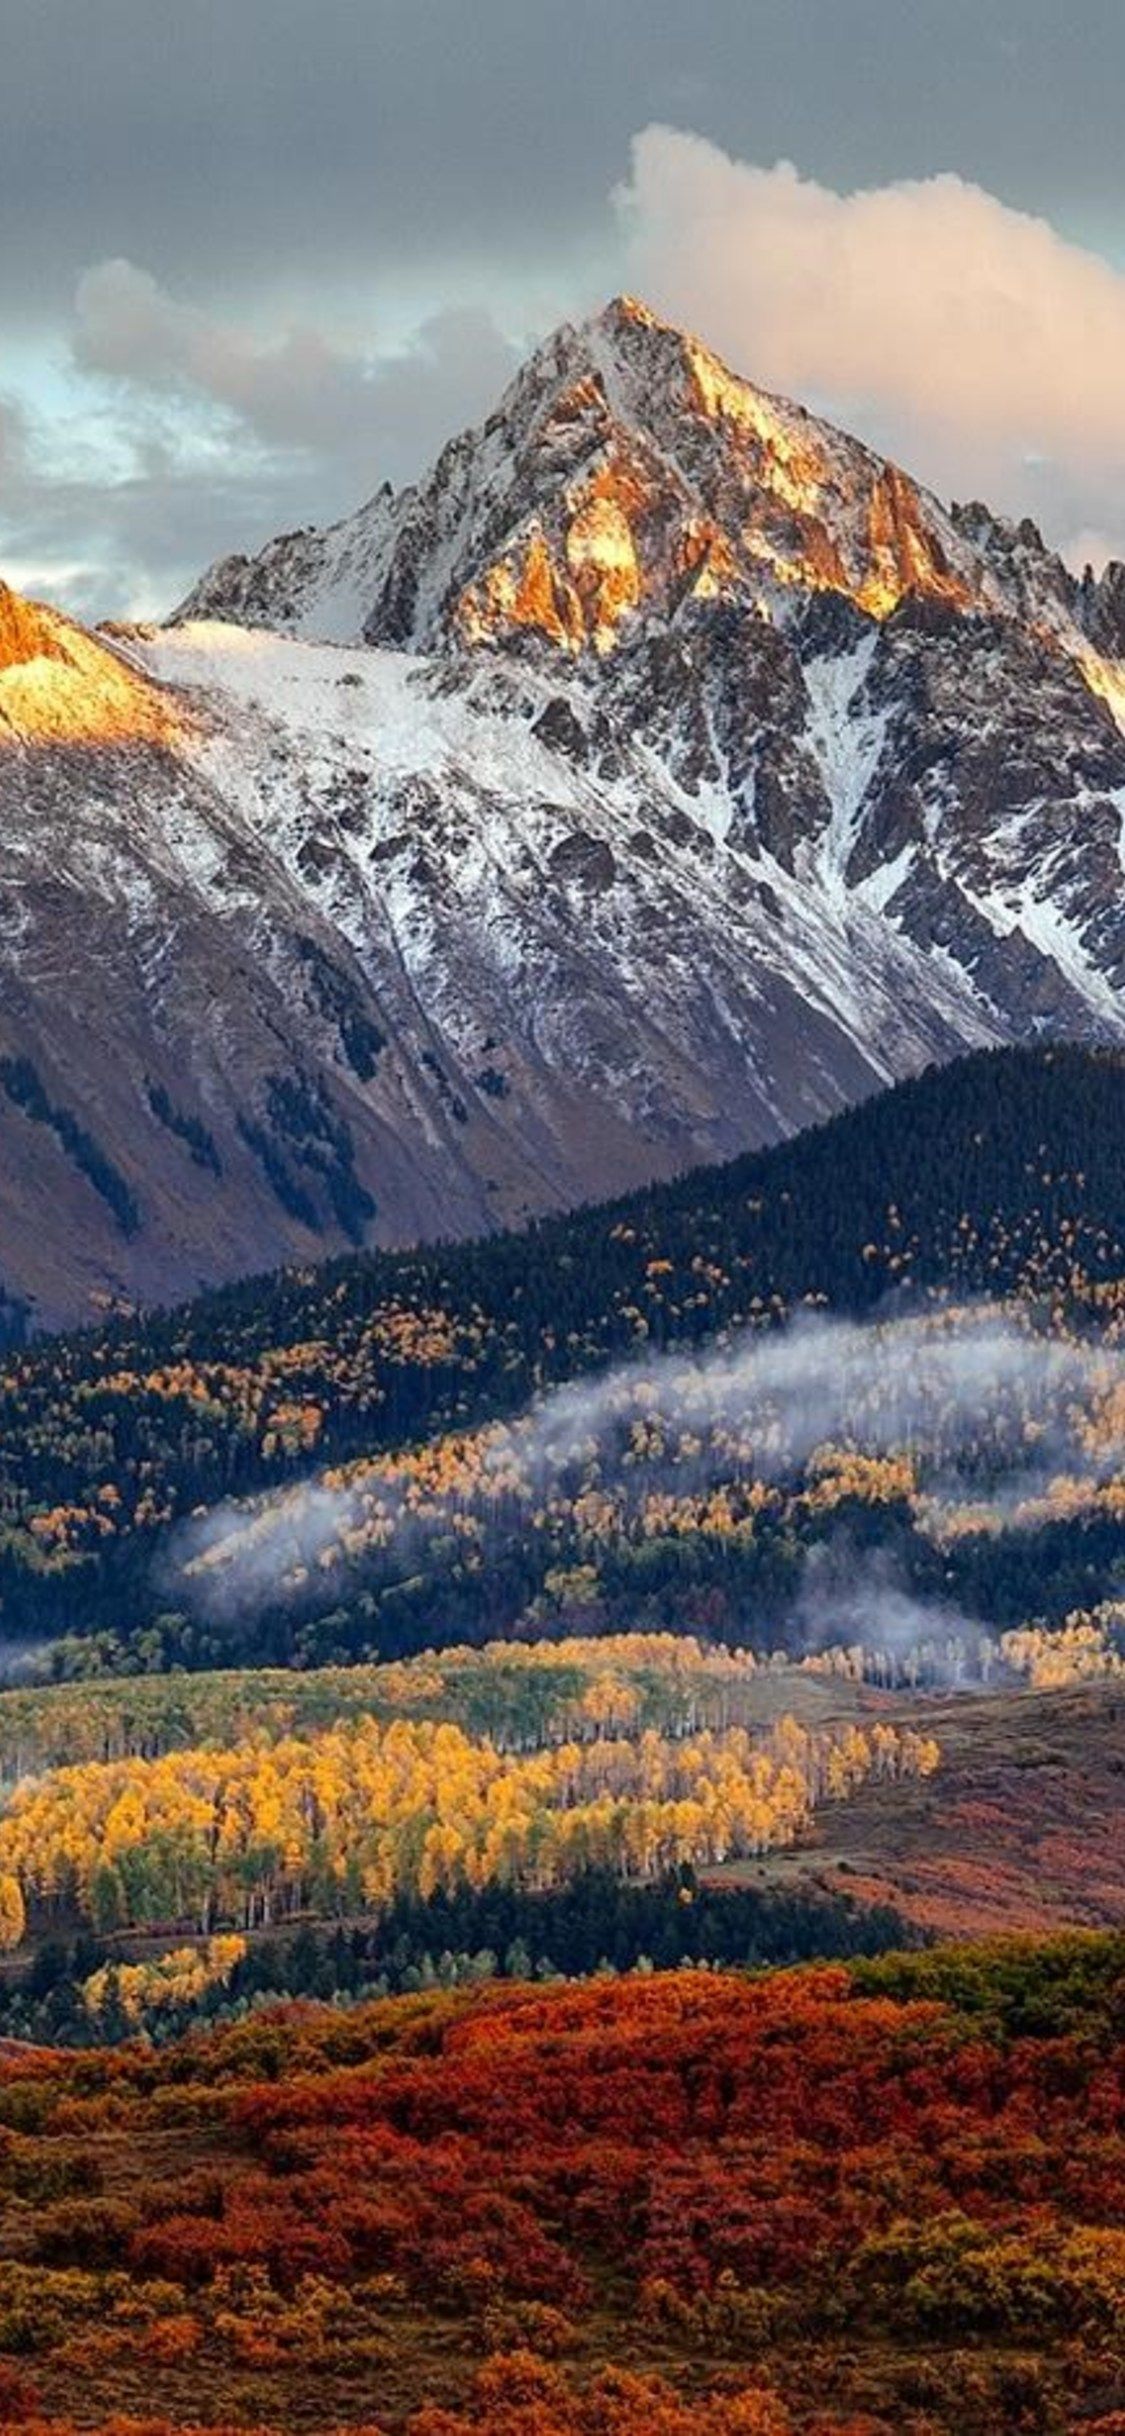 Colorado Mountains iPhone Wallpaper